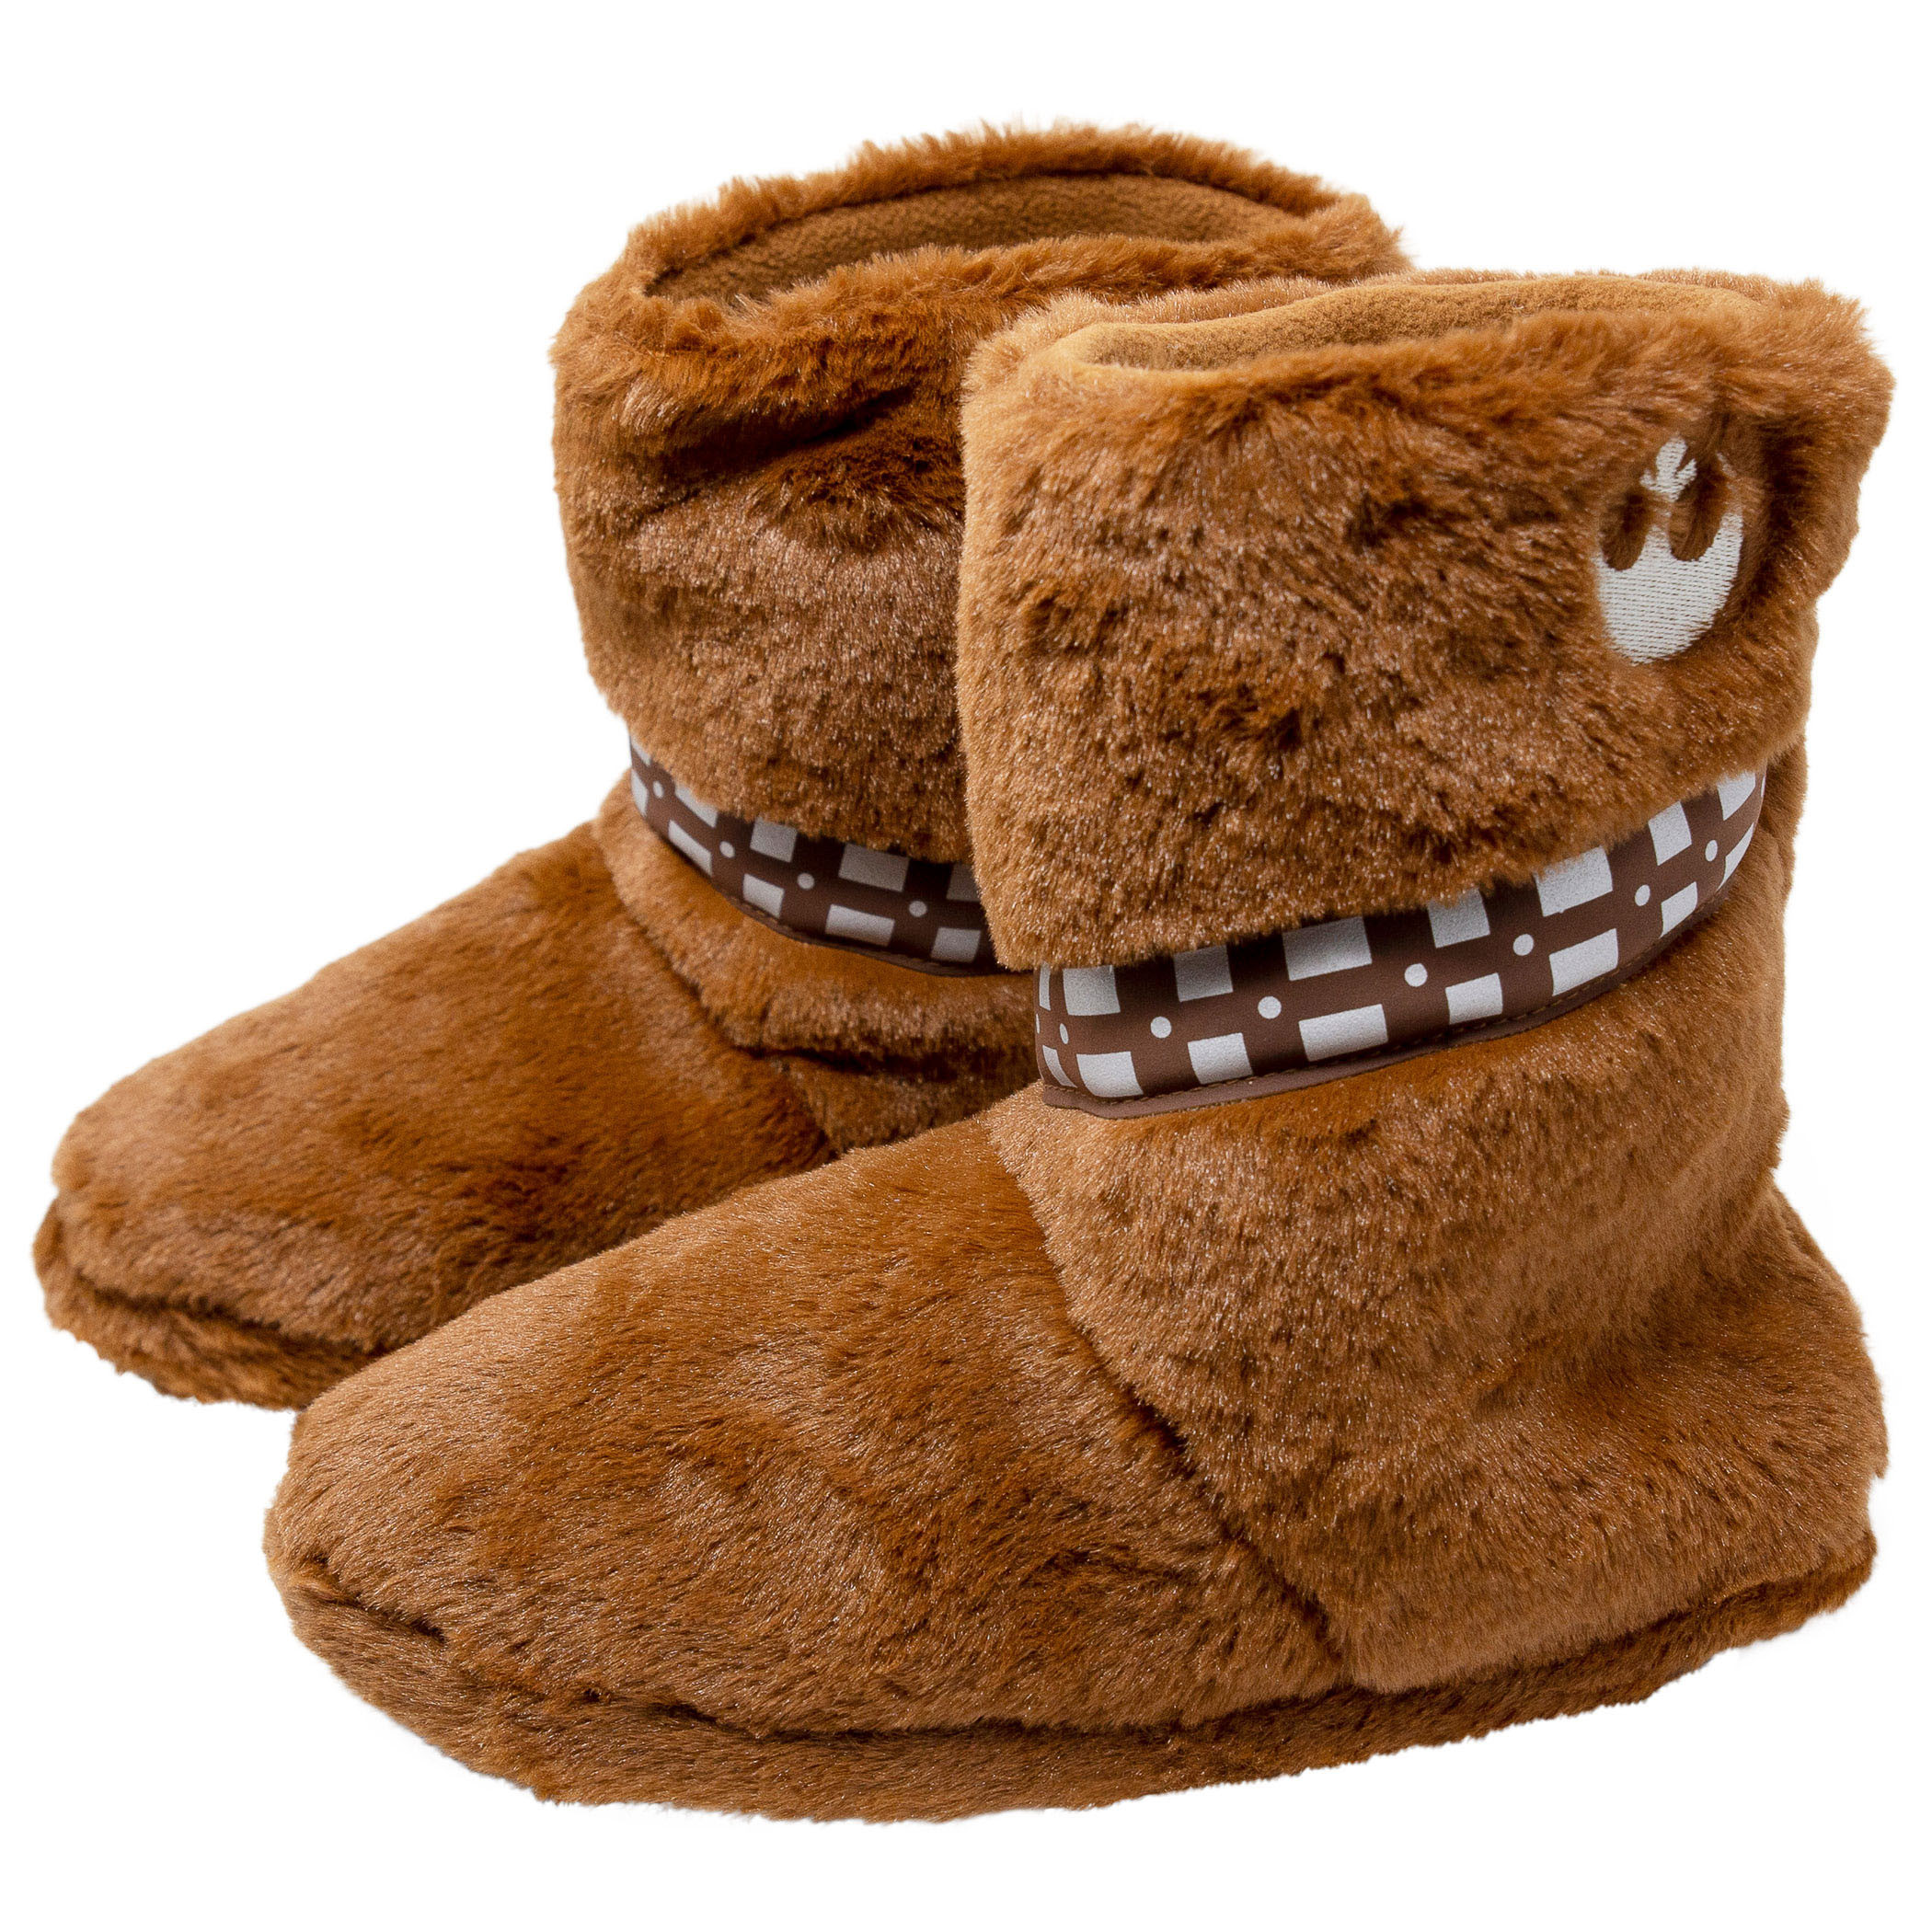 Star Wars Chewbacca Fuzzy Slippers